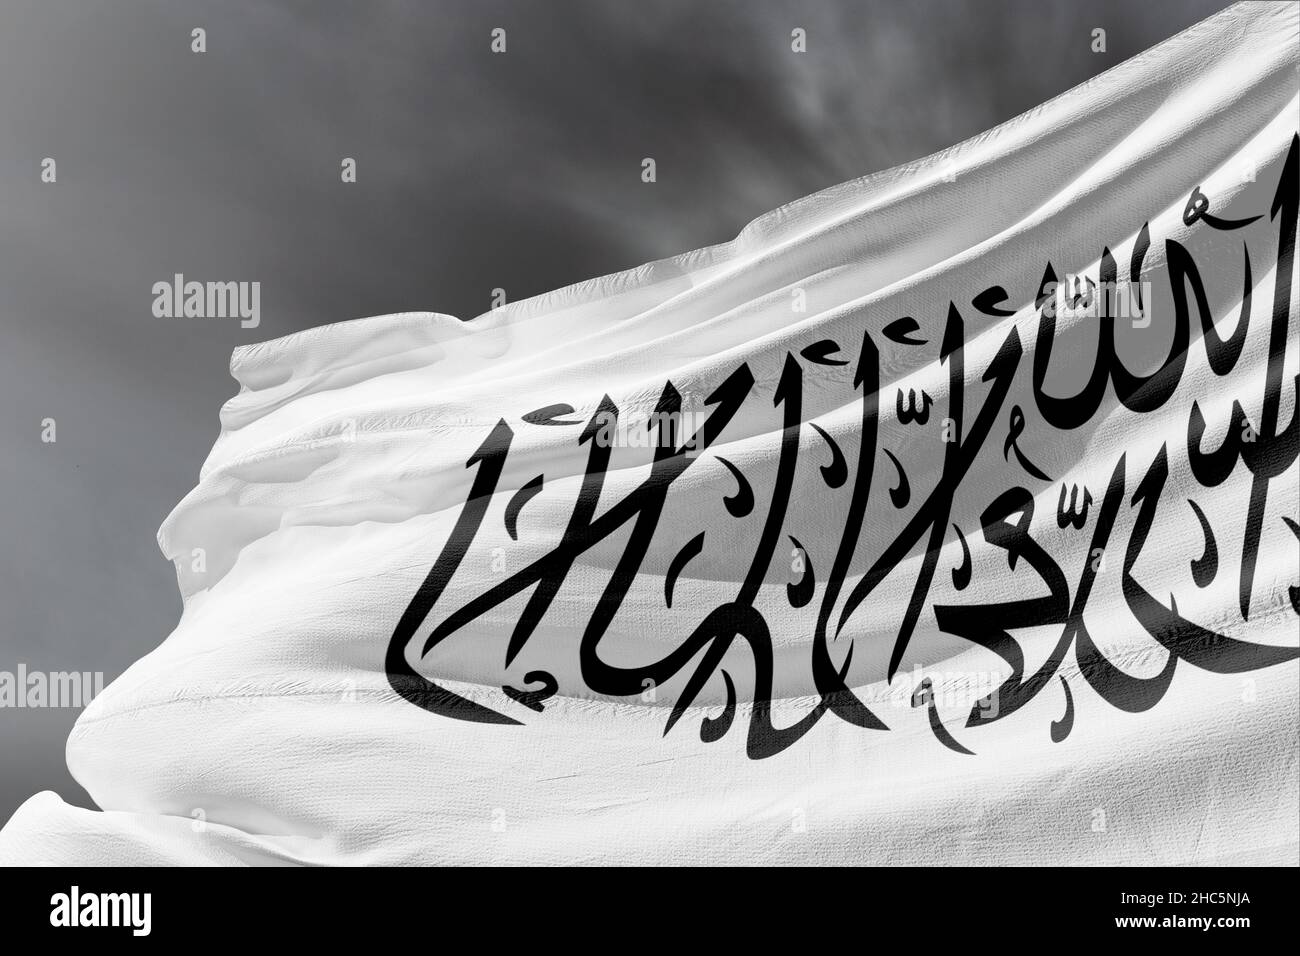 Bandera de Afganistán, Afganistán en poder de los talibanes. Traducción La inscripción 'Shahada' está escrita en la bandera blanca. Foto de stock